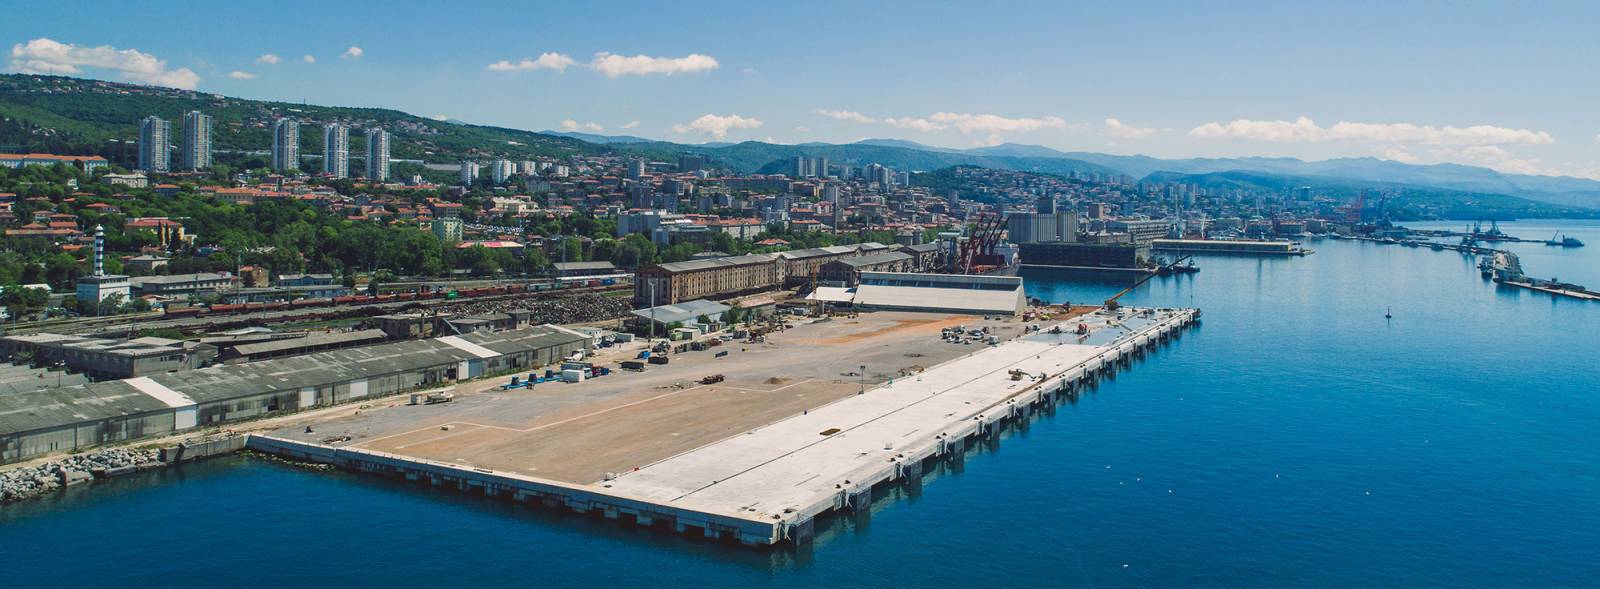 历史悠久的Rijeka Image 1的港口容量加倍